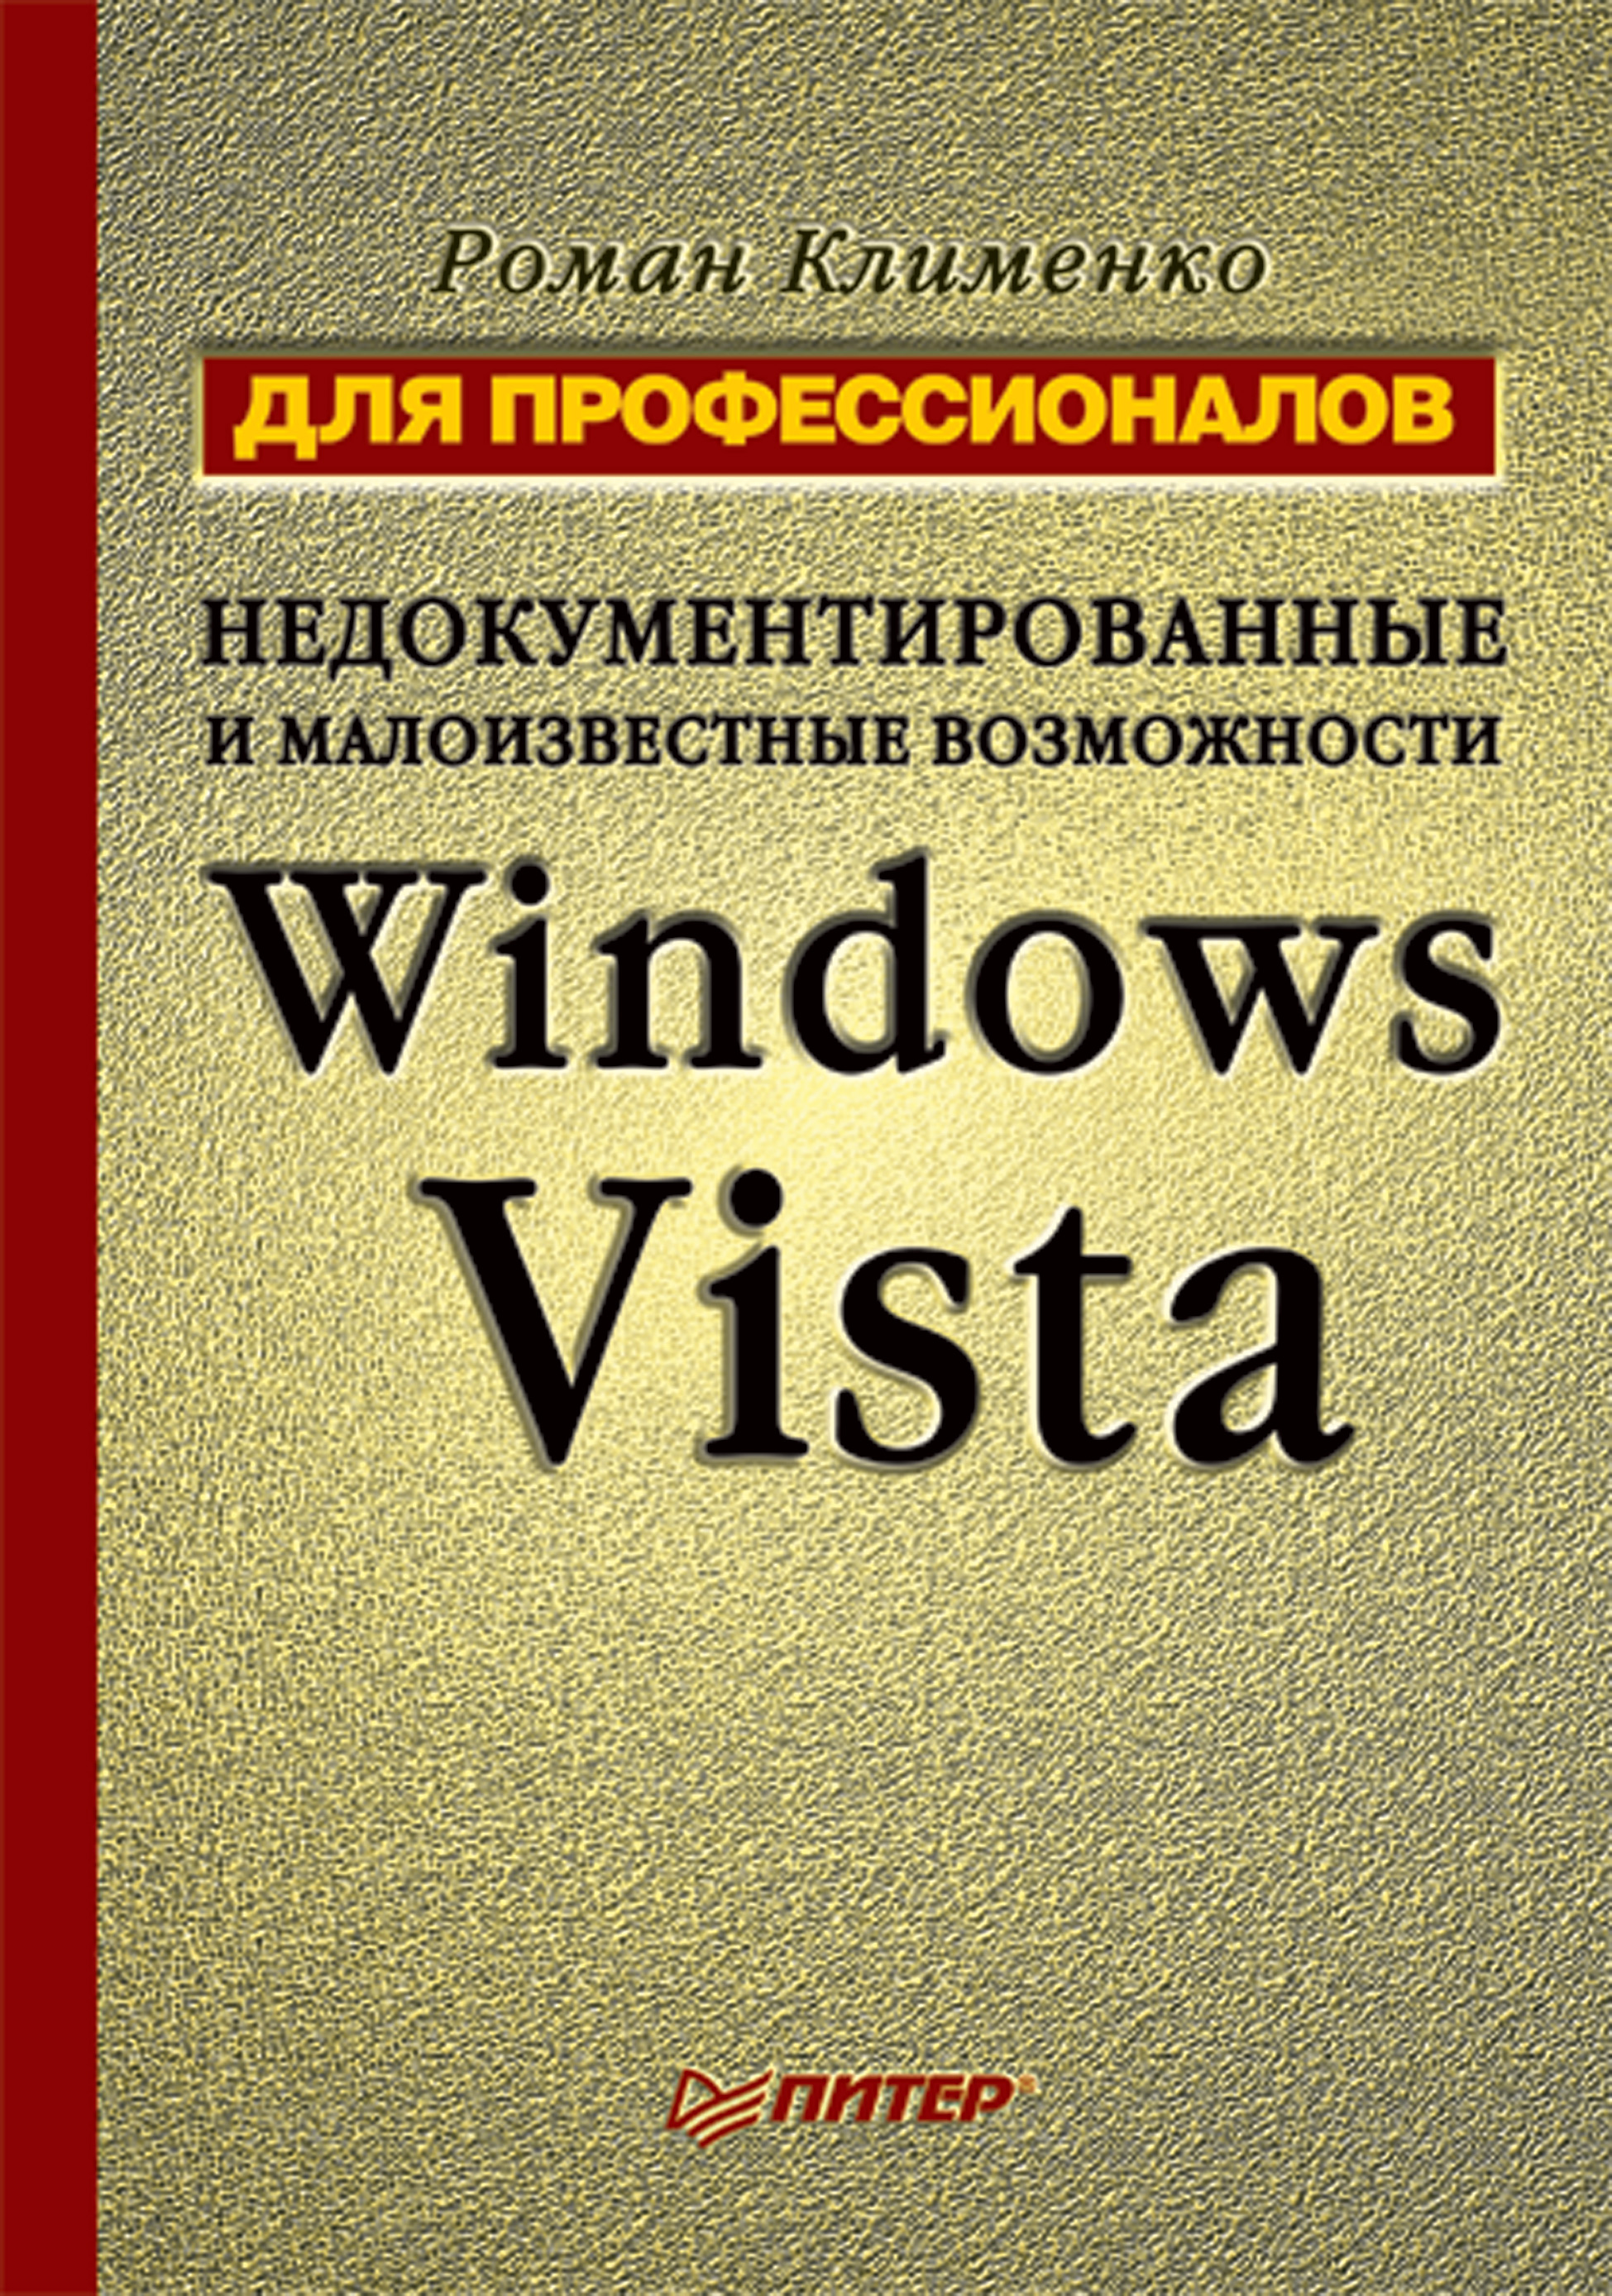 Книга Для профессионалов Недокументированные и малоизвестные возможности Windows Vista. Для профессионалов созданная Роман Клименко может относится к жанру ОС и сети. Стоимость электронной книги Недокументированные и малоизвестные возможности Windows Vista. Для профессионалов с идентификатором 6447971 составляет 79.00 руб.